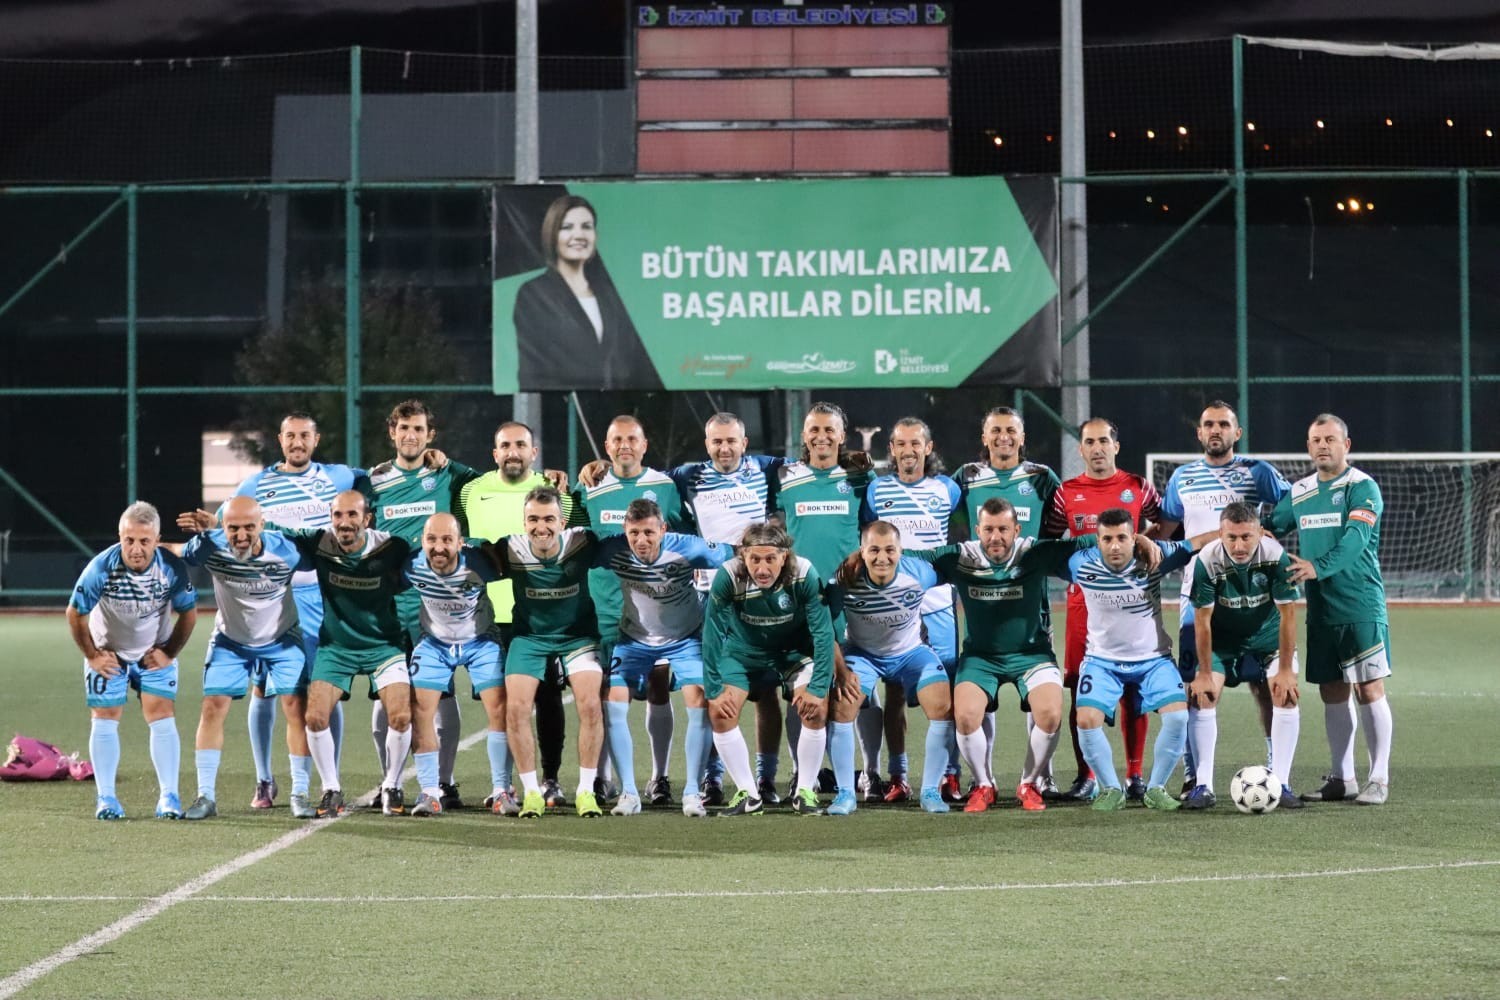 İzmit Belediyesi Başkanlık Kupası’nda heyecan başladı #kocaeli